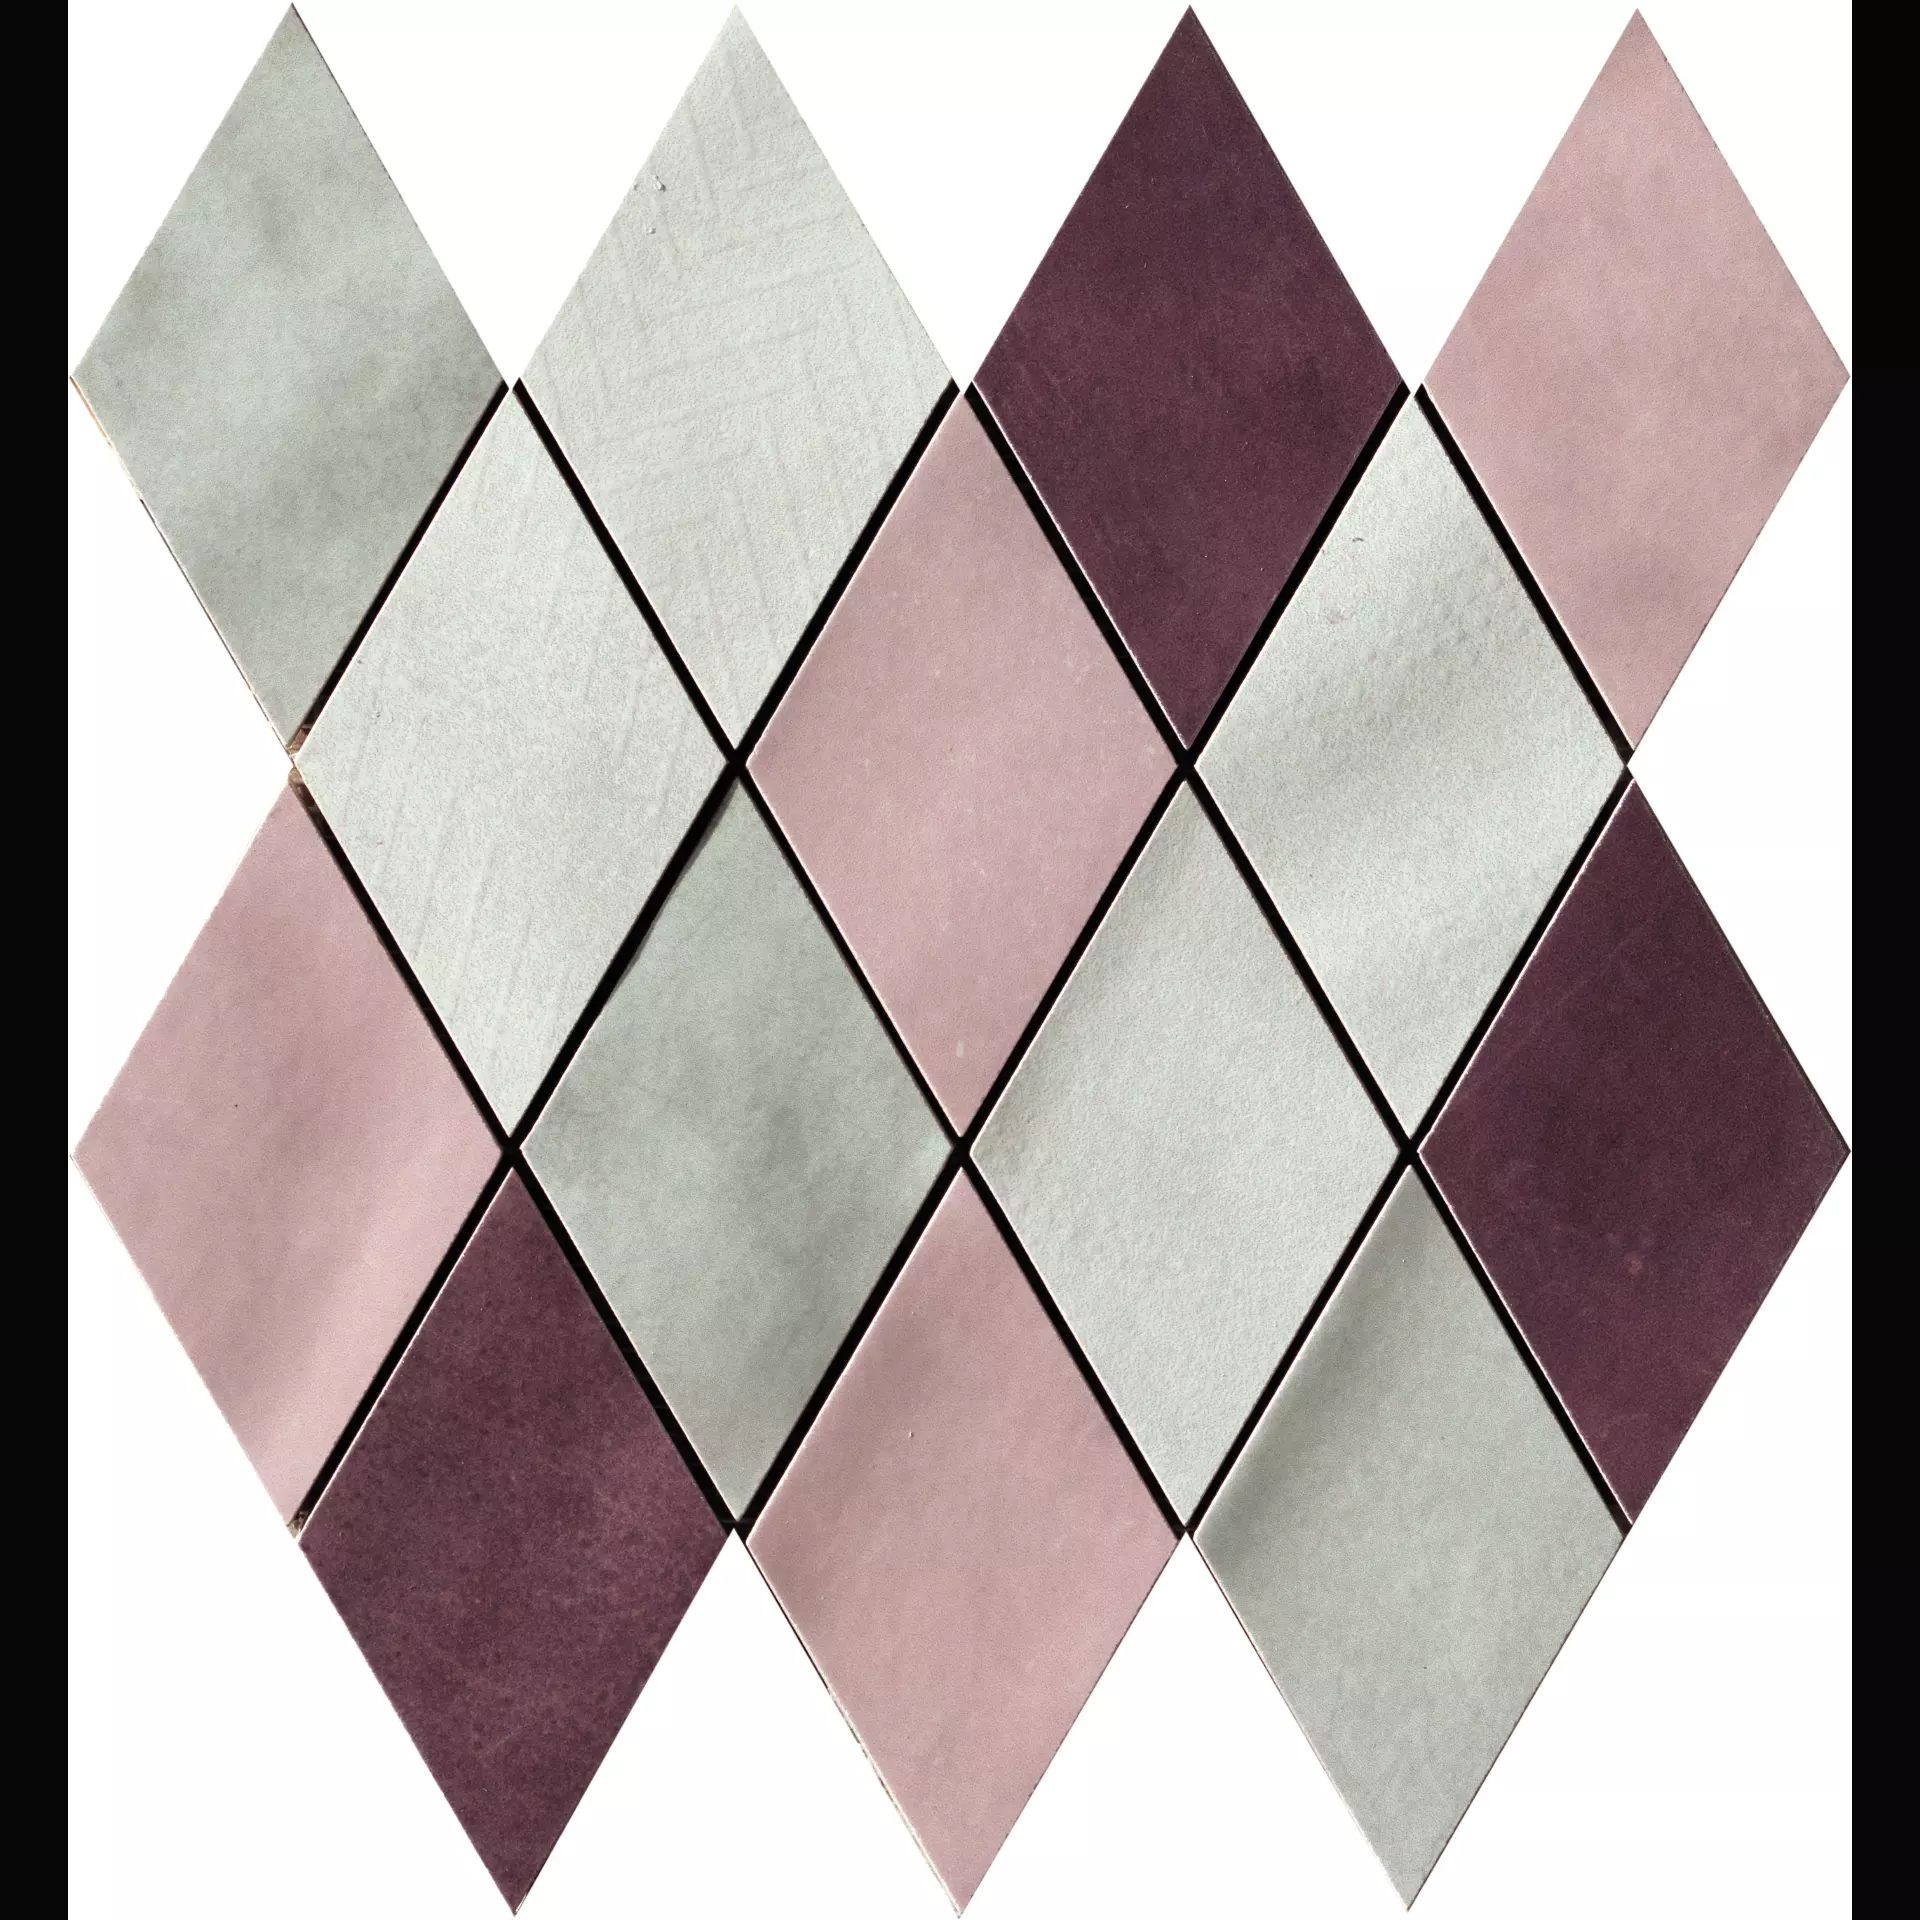 CIR Materia Prima Pink Naturale Mosaik Rombo Mix 1069908 25x25cm